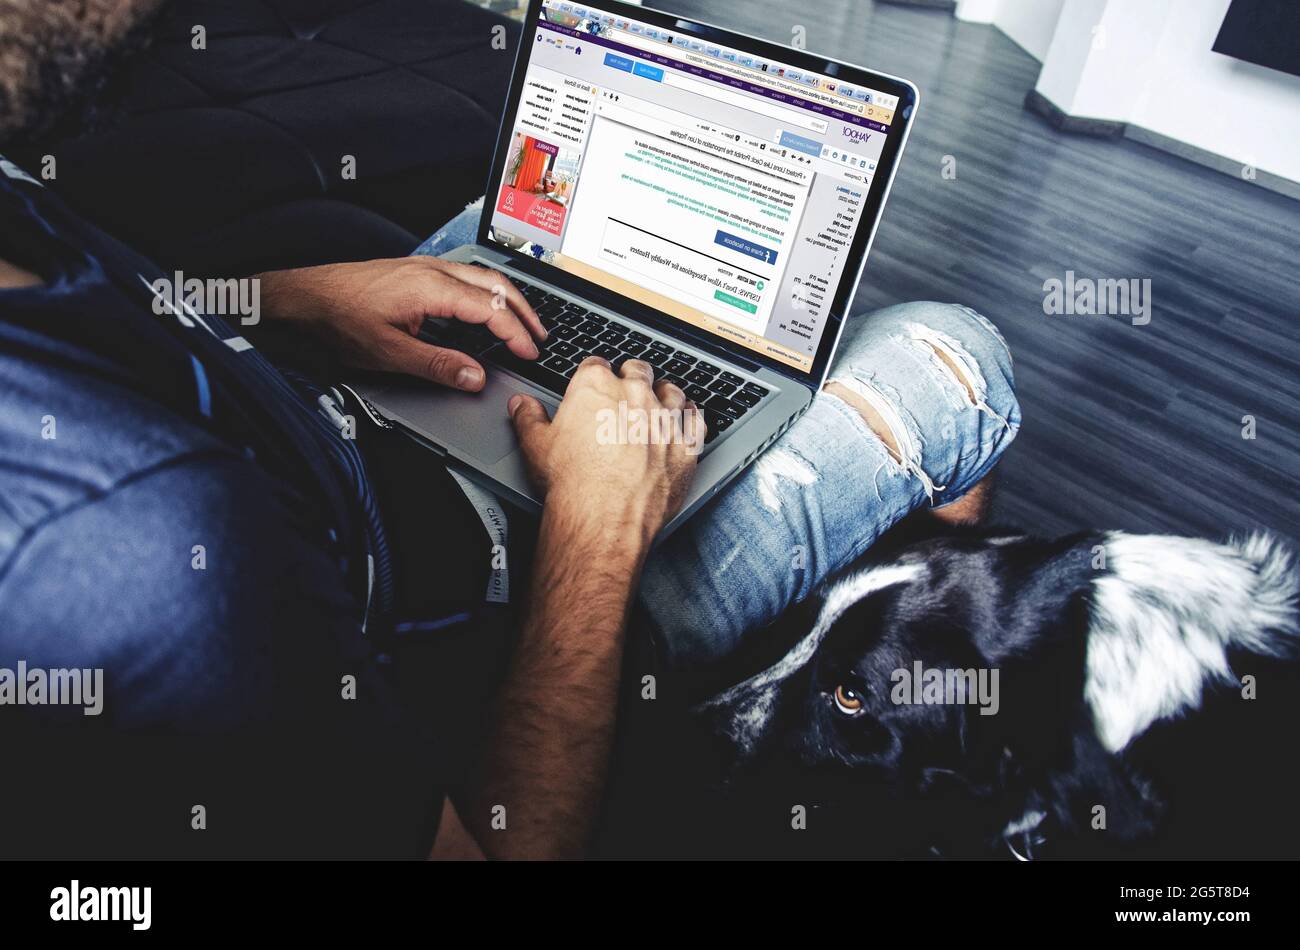 Hombre sentado en una silla para trabajar en una computadora, hombre blogging. Foto de stock